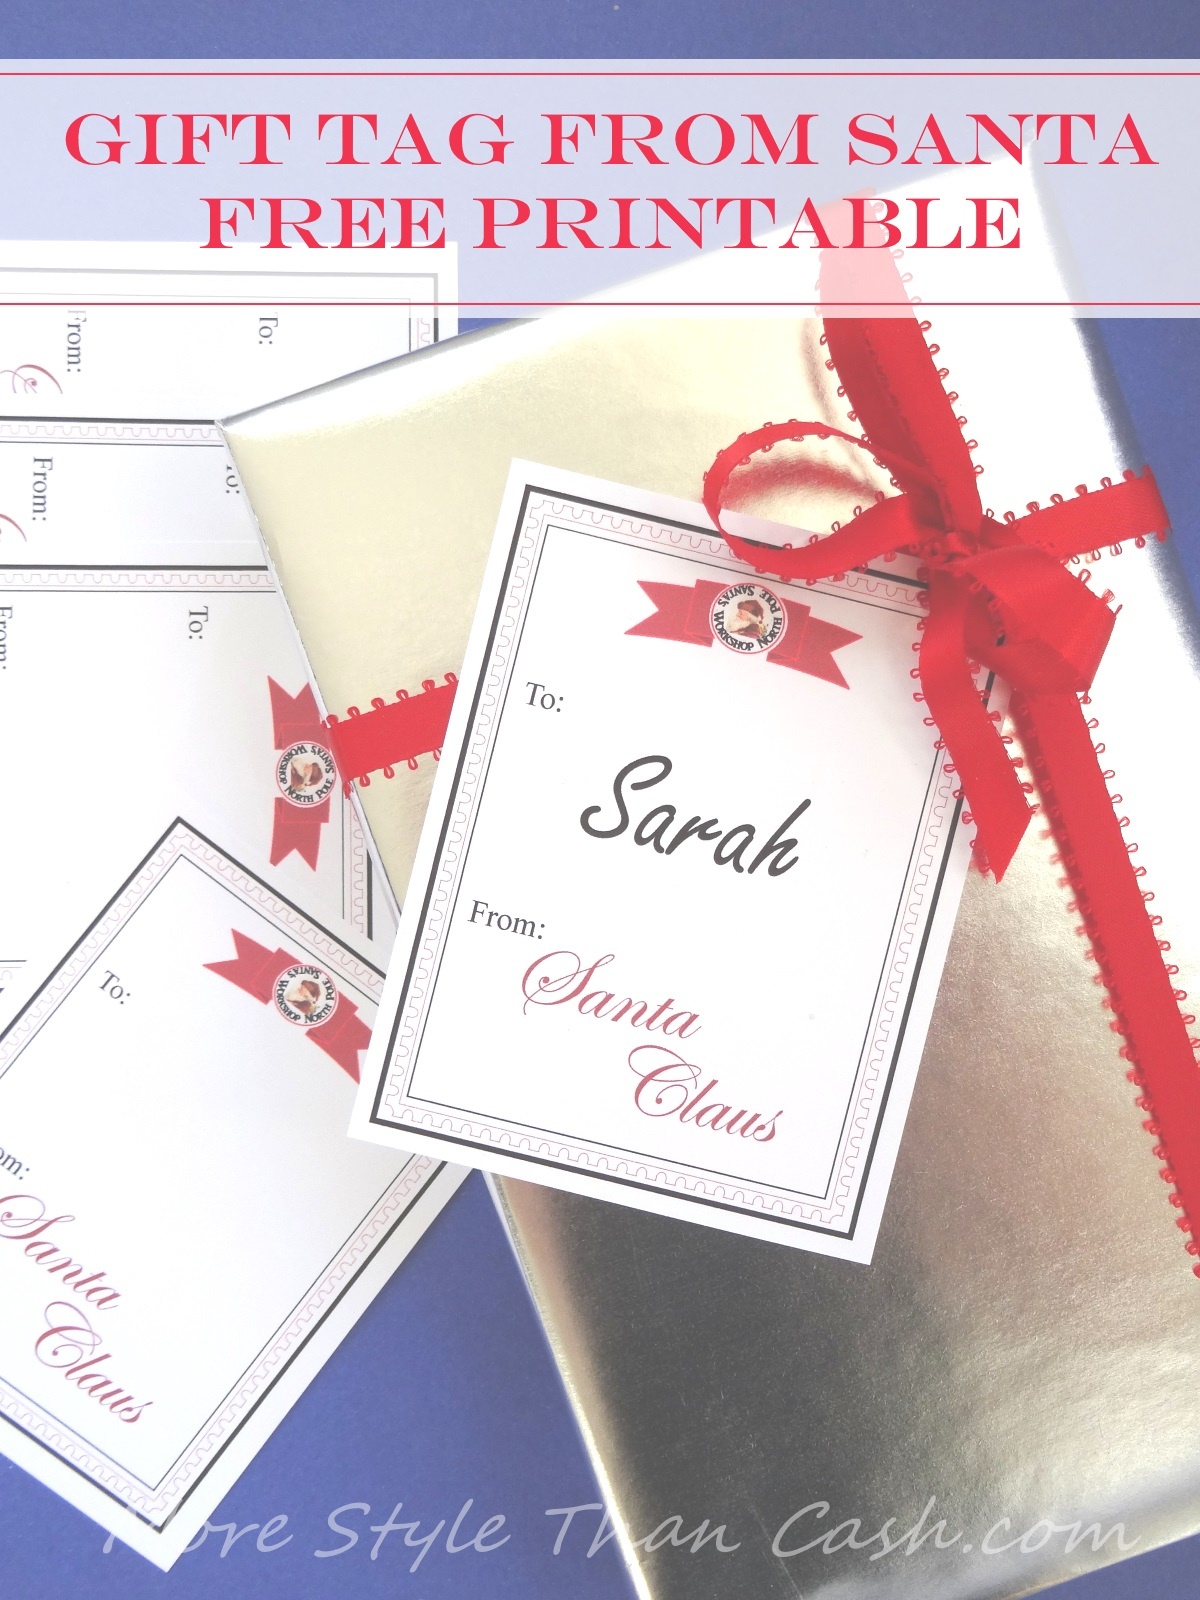 Gift Tag From Santa Free Printable - Free Printable Santa Gift Tags